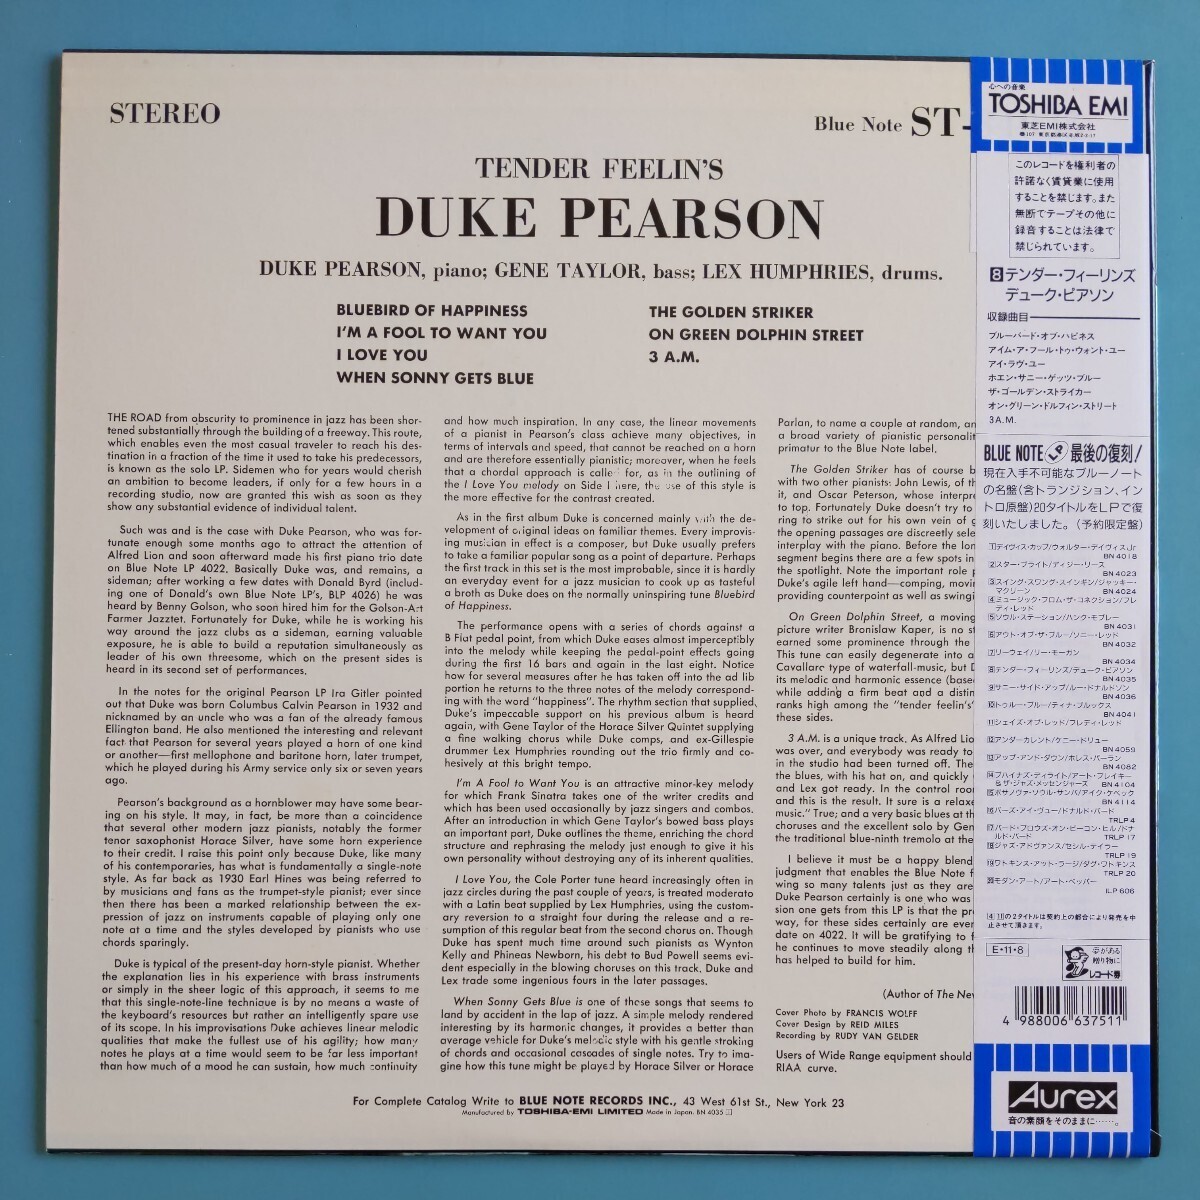 【帯付/試聴済LP】DUKE PEARSON『TENDER FEELUN'S』デューク・ピアソン★Blue Note 東芝 1989年BN4035★ブルーノート_画像2